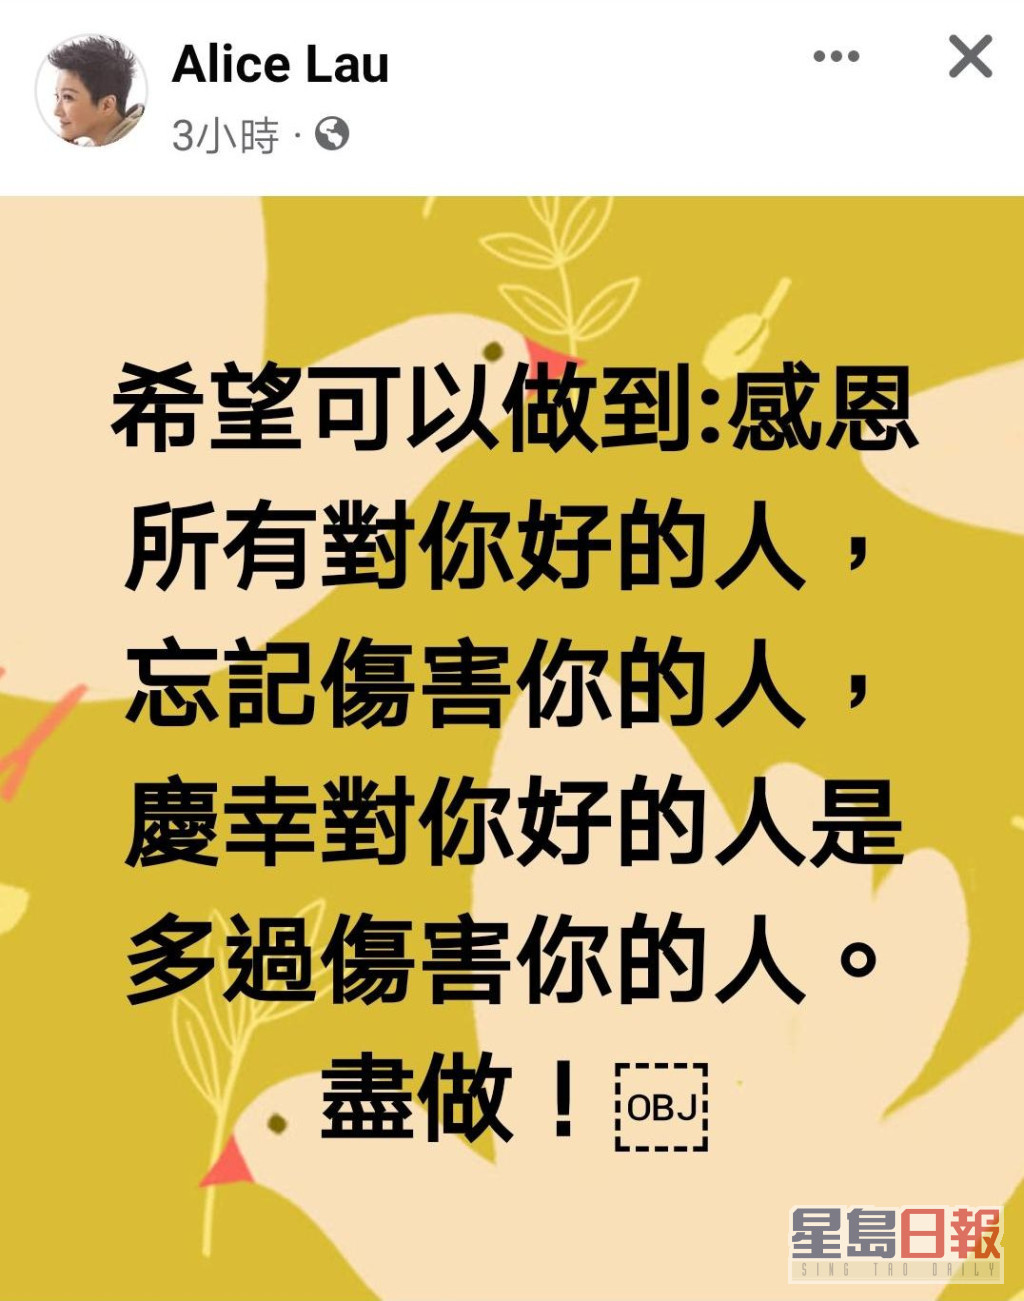 劉雅麗喺FB發表「感恩論」。